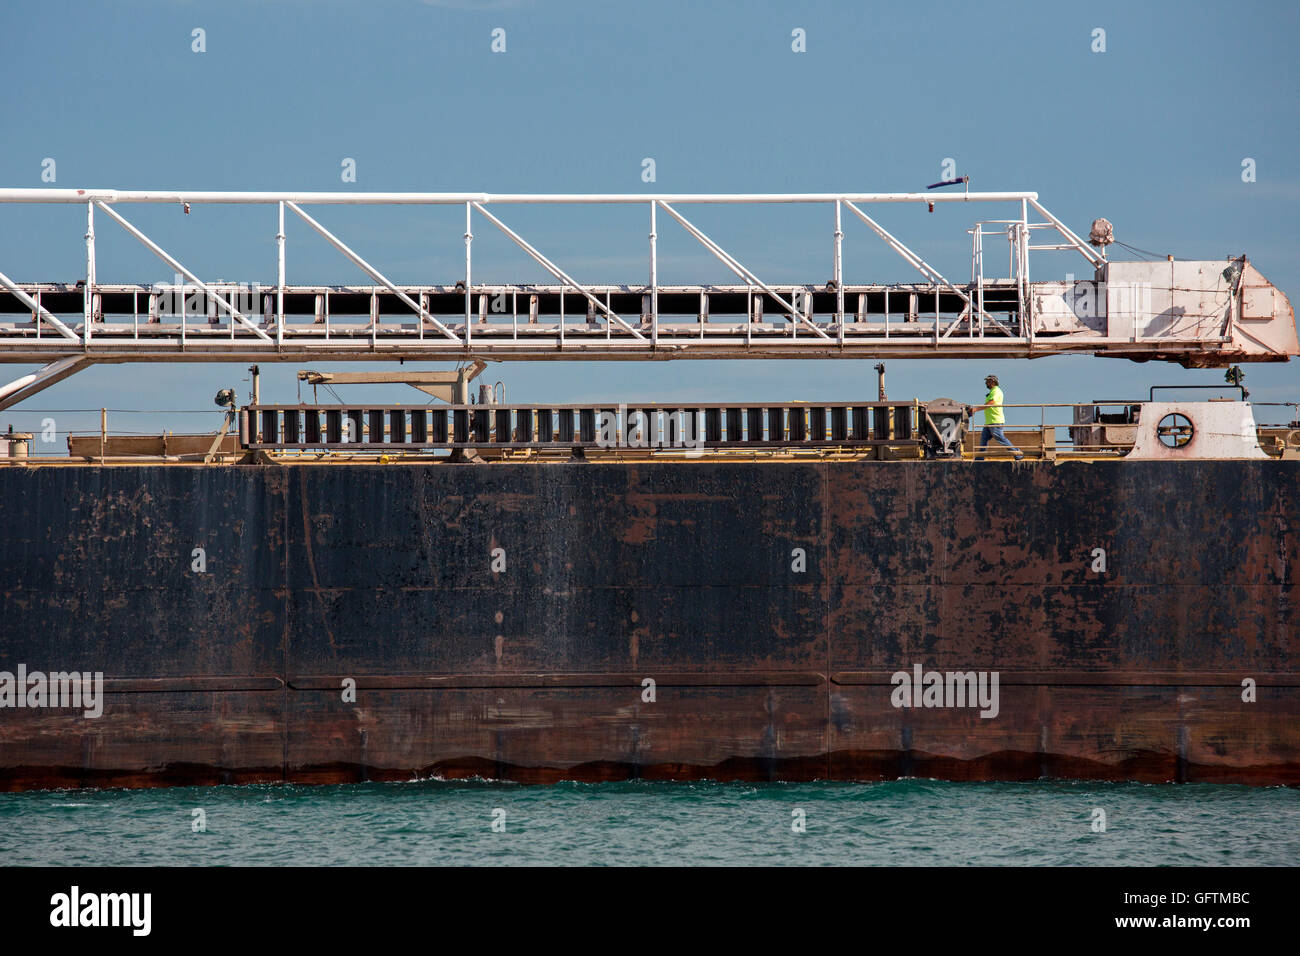 Detroit, Michigan - ein Crew-Mitglied geht auf dem Deck von der amerikanischen Mariner-Bulk-Carrier, Segeln auf den Detroit River. Stockfoto